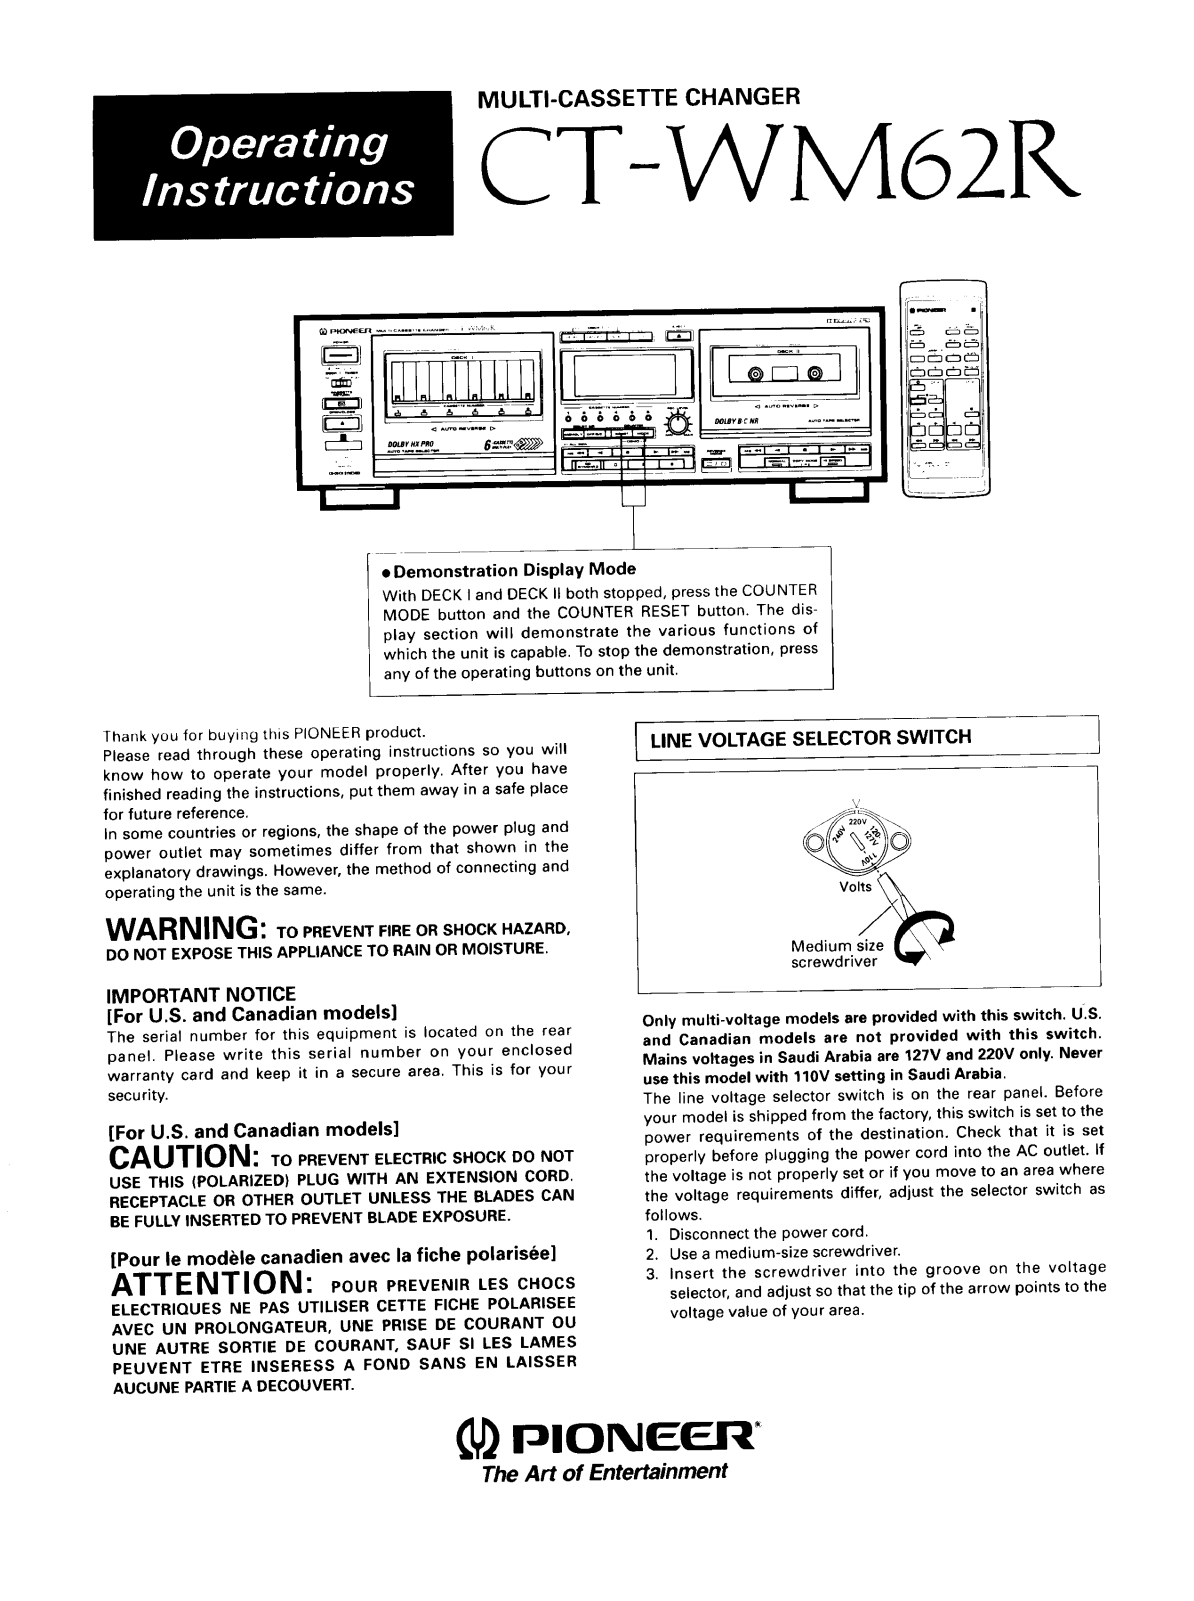 Pioneer CTWM62R Owner’s Manual